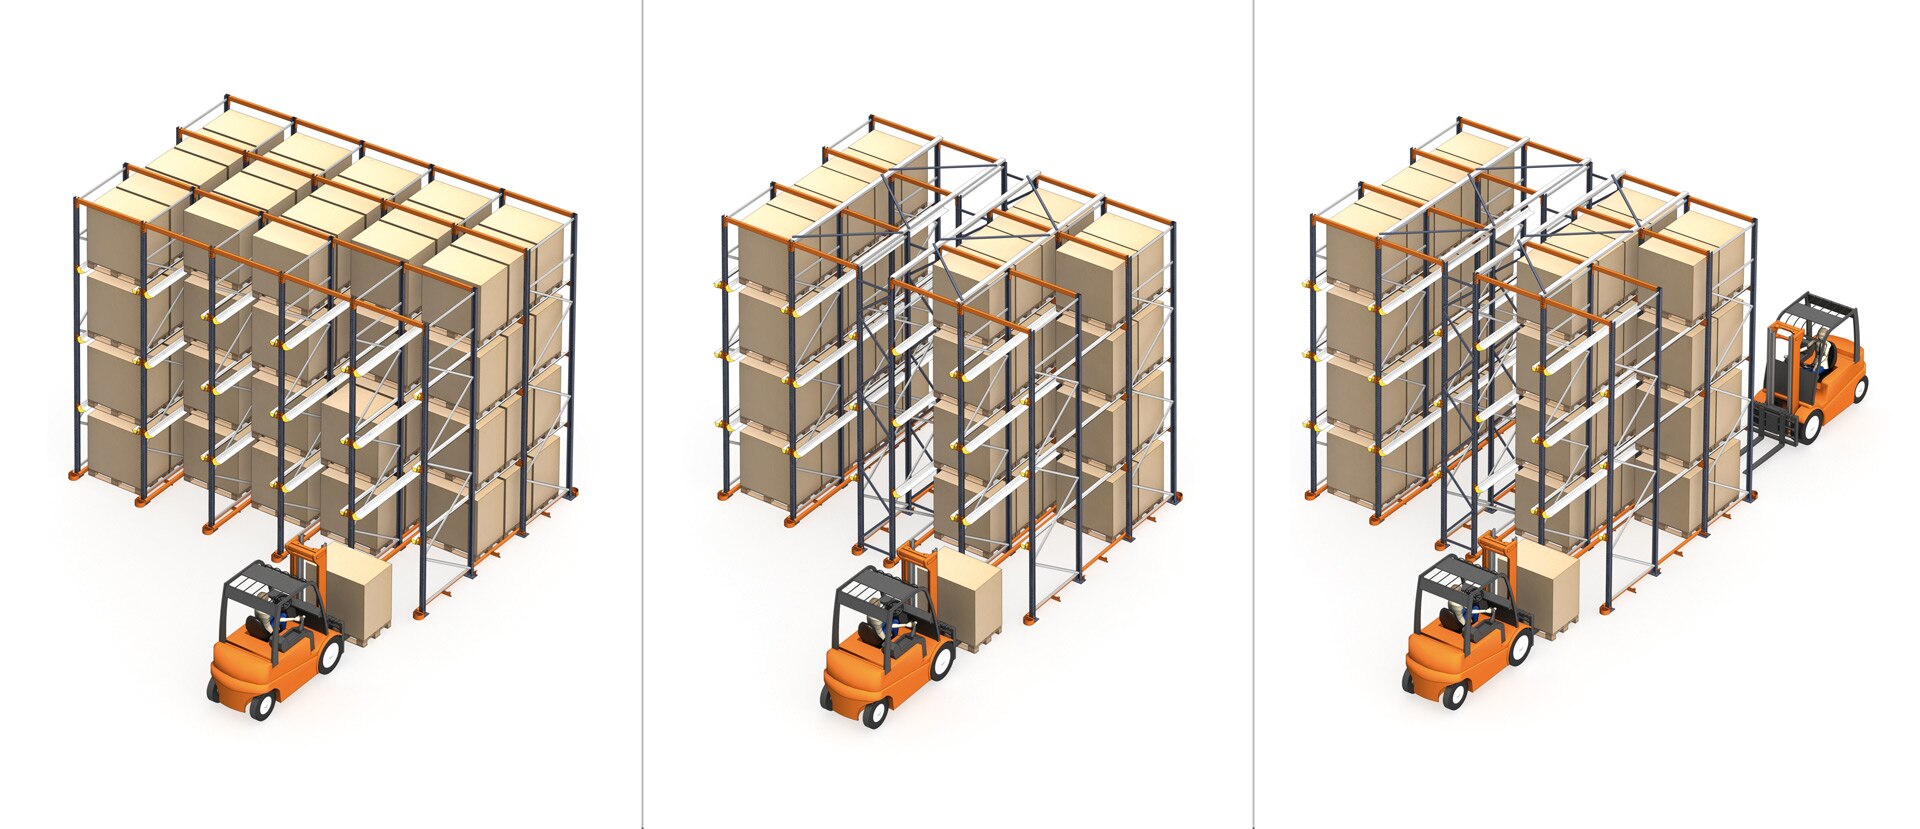 As estantes compactas podem ser drive-in ou drive-thru, dependendo se o acesso à carga é feito por um lado ou por ambos